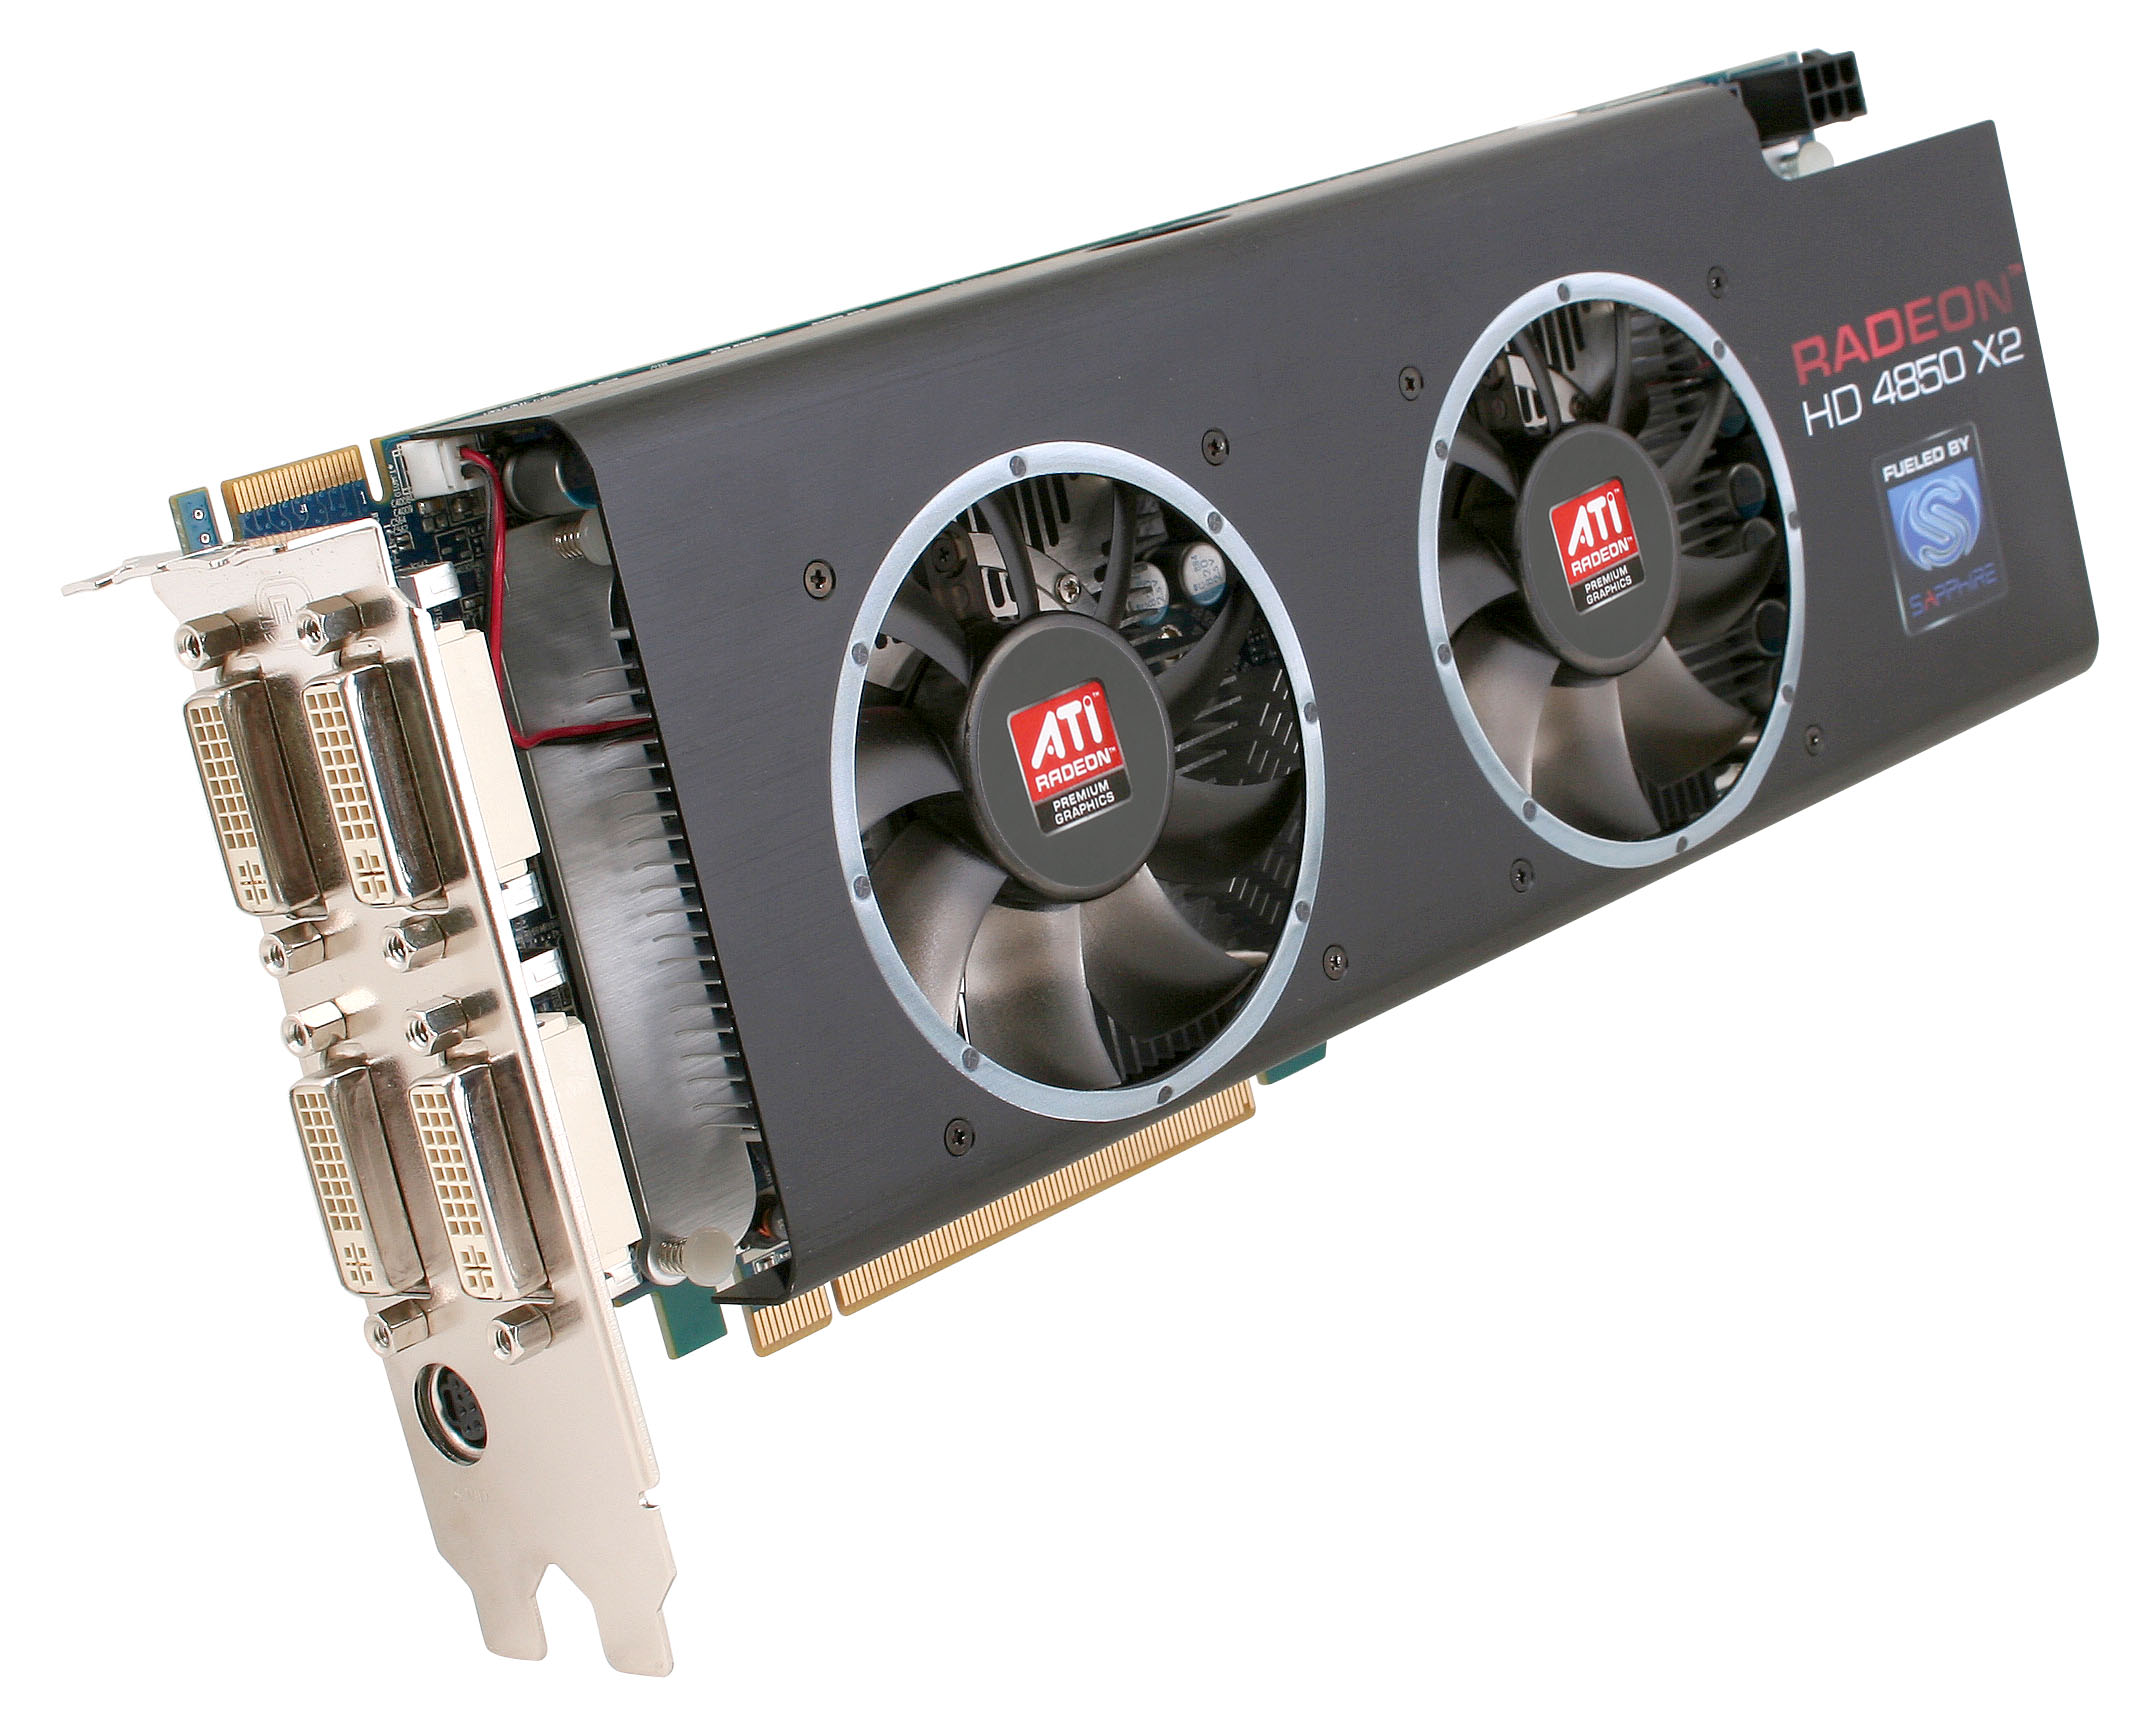 Immagine pubblicata in relazione al seguente contenuto: Sapphire commercializza la dual-gpu Radeon HD 4850 X2 2GB | Nome immagine: news8947_1.jpg